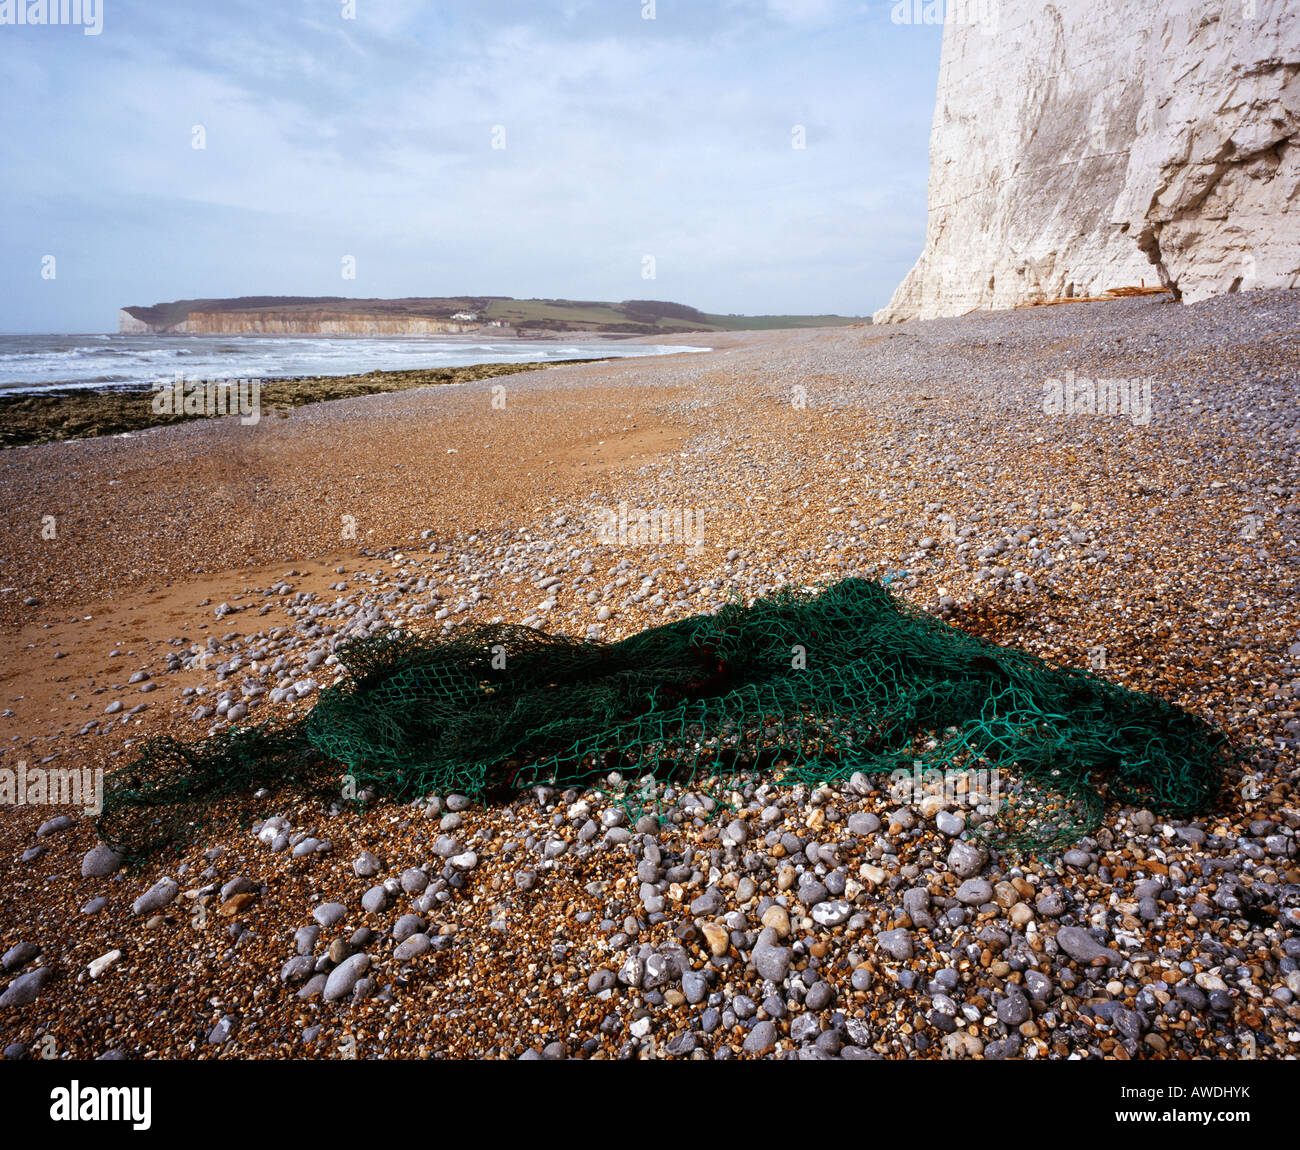 Ausrangierte Fischernetz gewaschen auf einem Strand. Cuckmere Haven, East Sussex, England, UK. Stockfoto